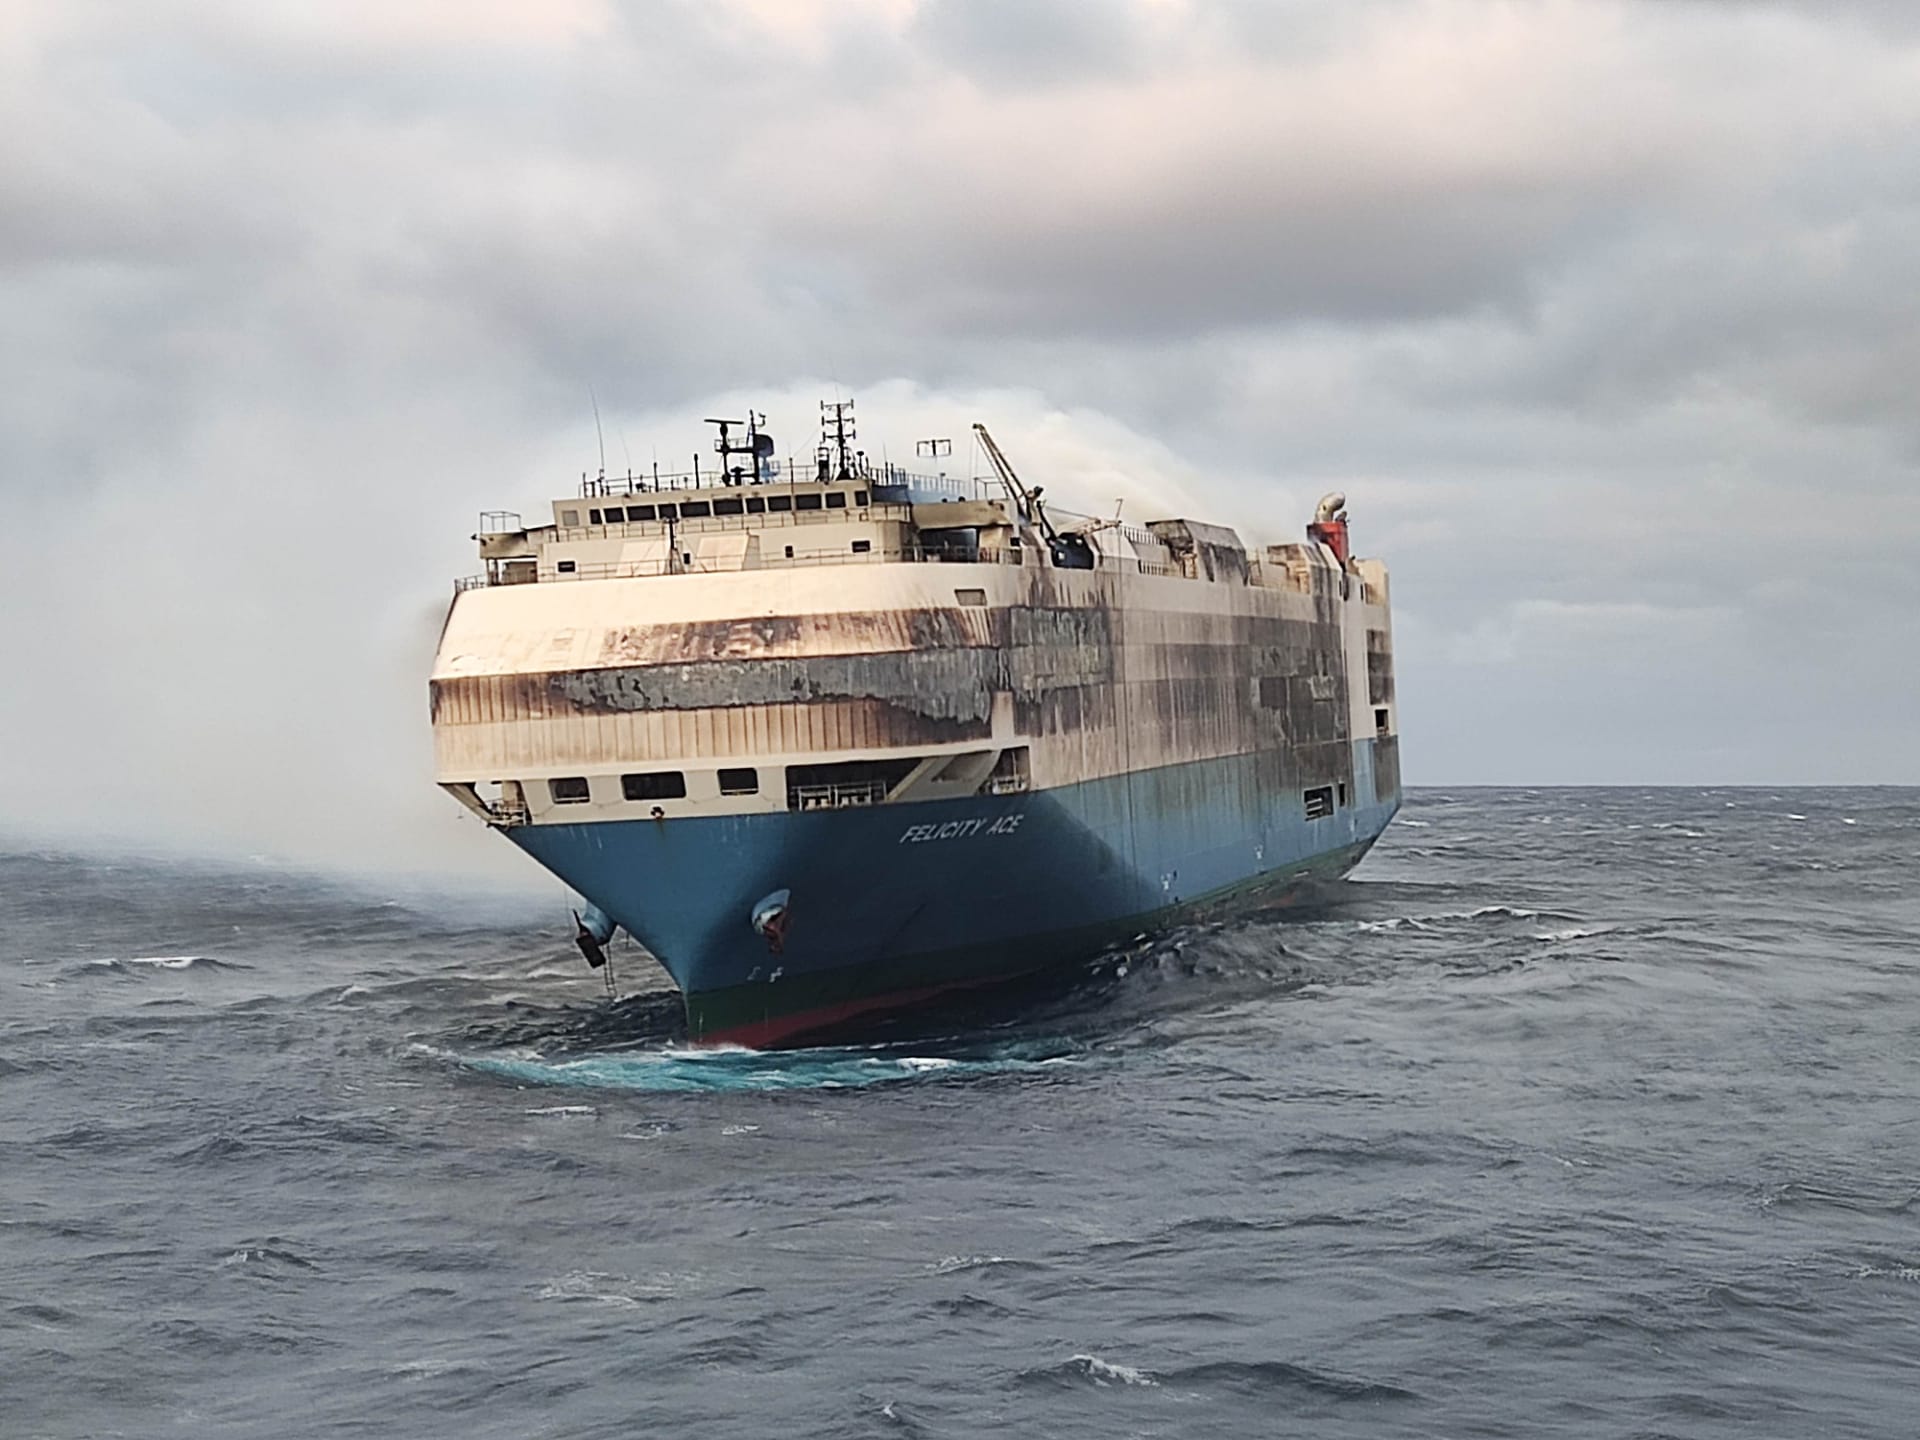 Пожар из-за батареи: сгоревший корабль с 4000 машин может вызвать подорожание электрокаров